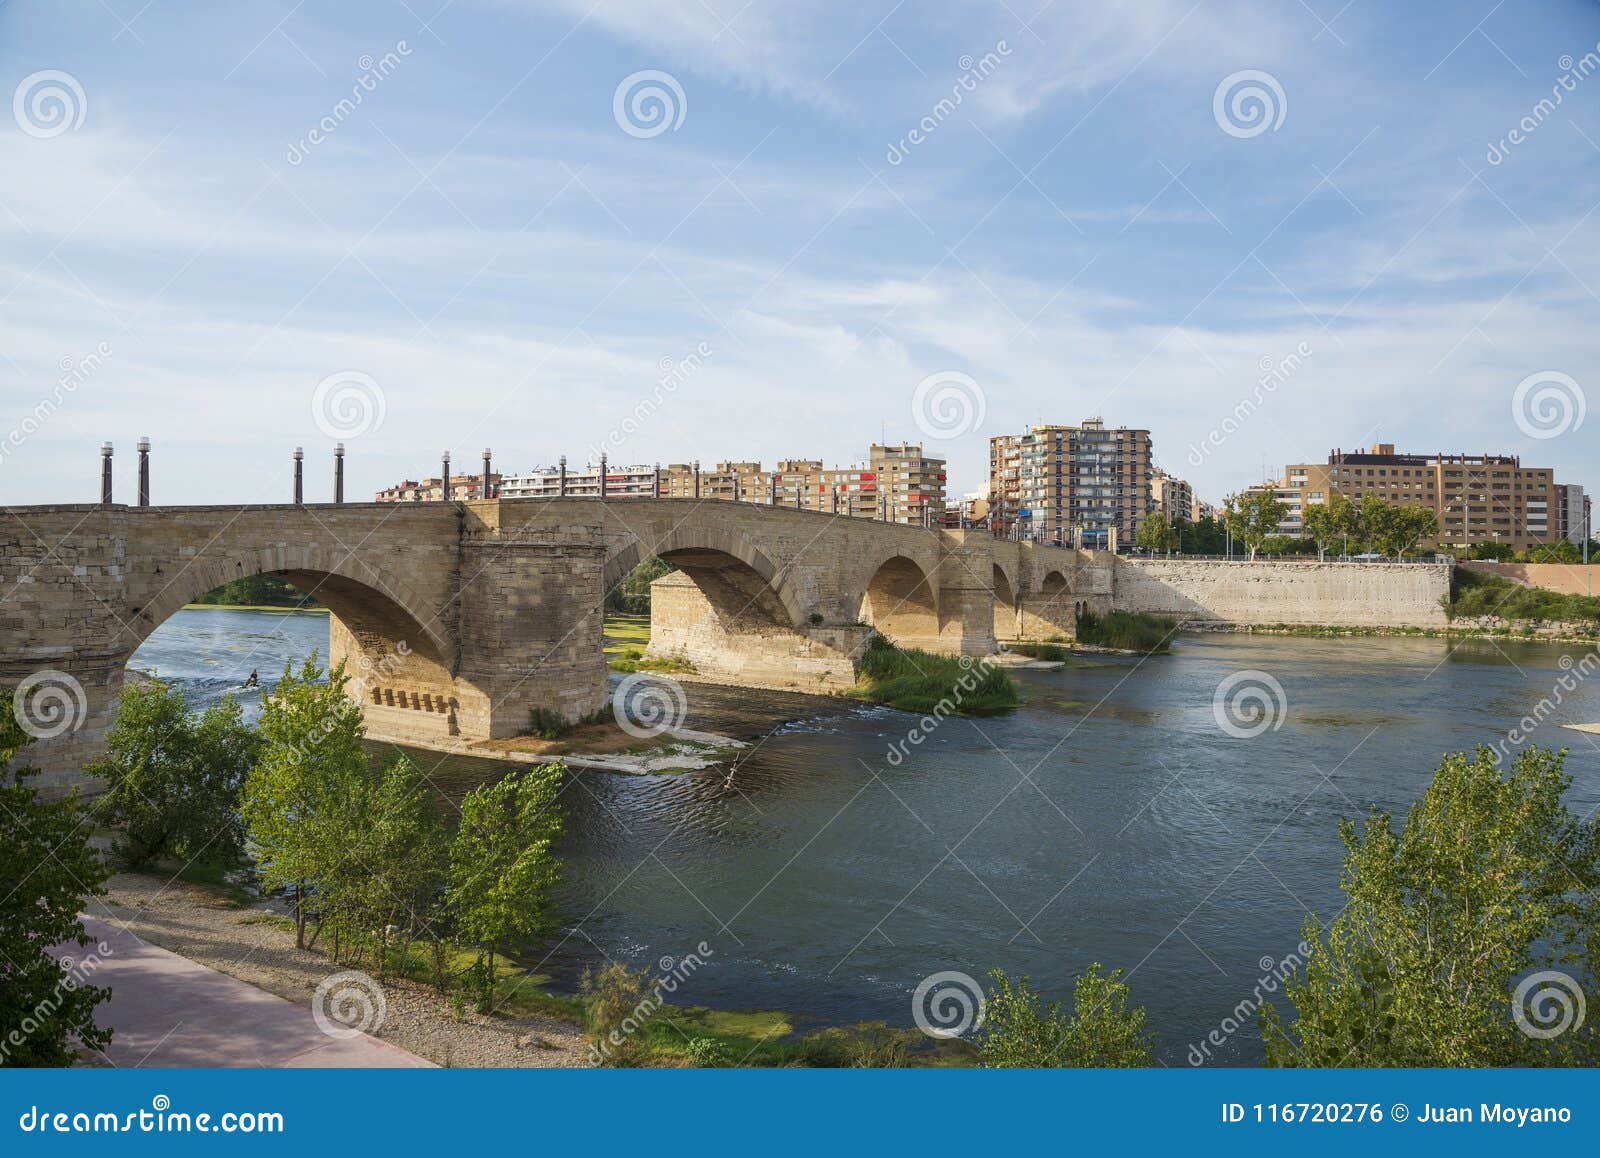 stone bridge and ebro river in zaragoza, spain